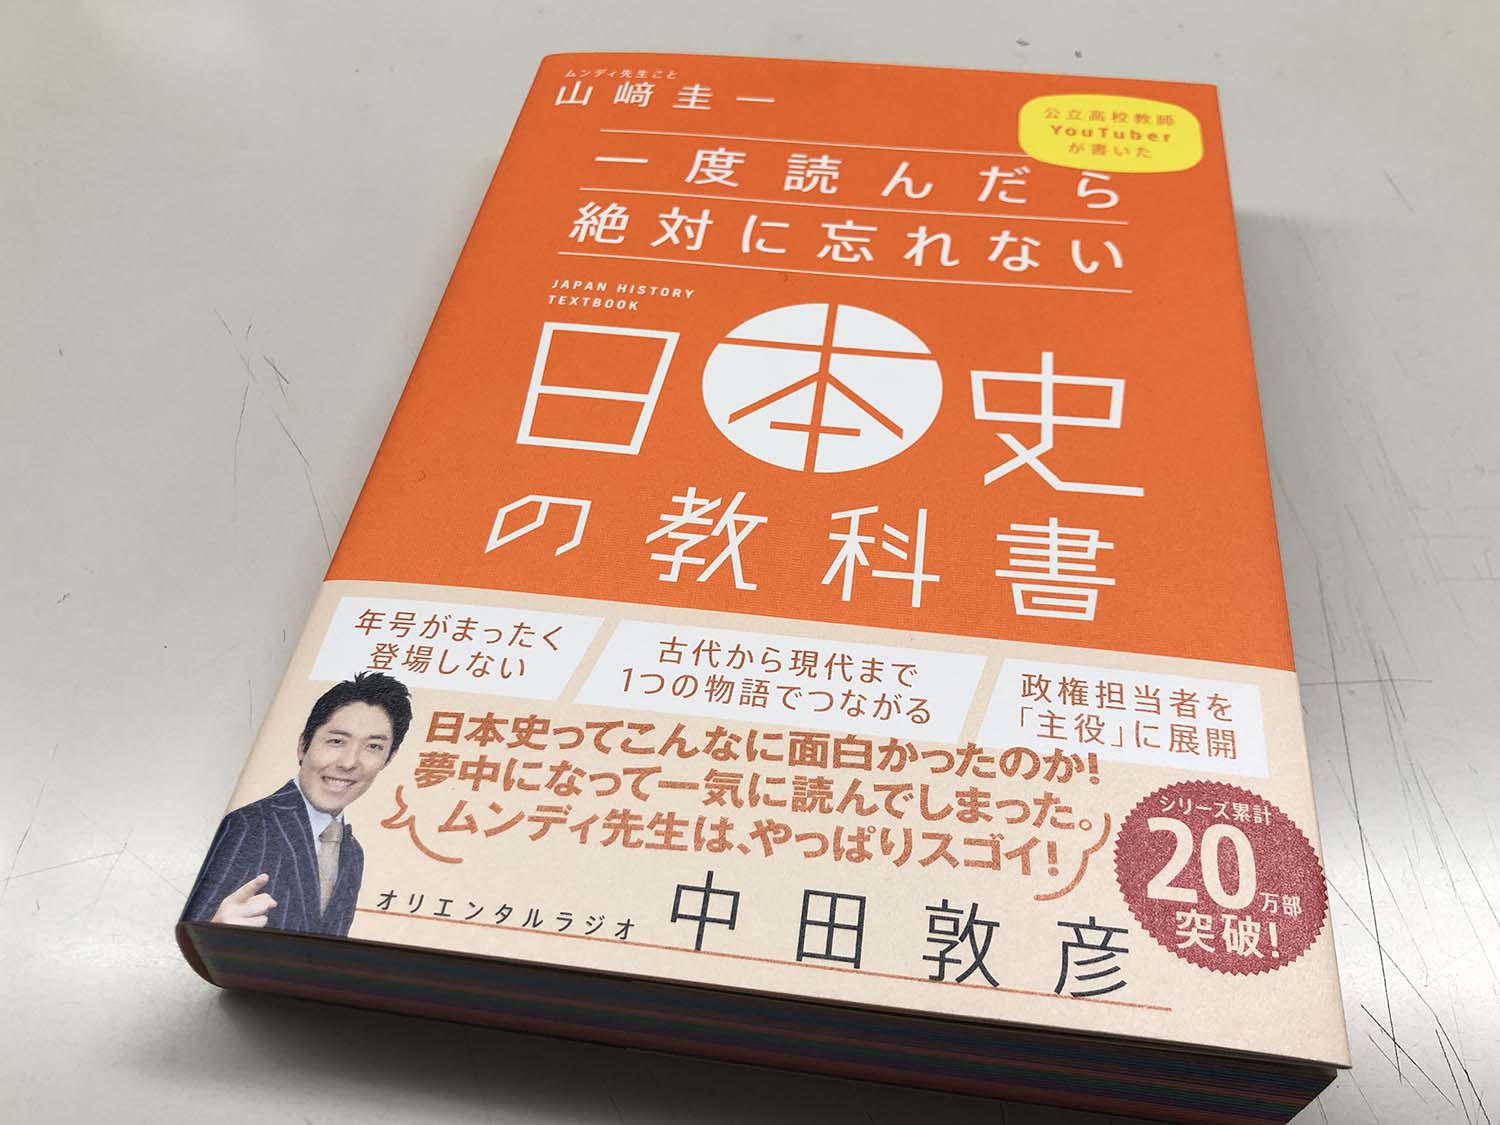 読了『一度読んだら絶対に忘れない日本史の教科書』 出版社で働く三代目のブログ